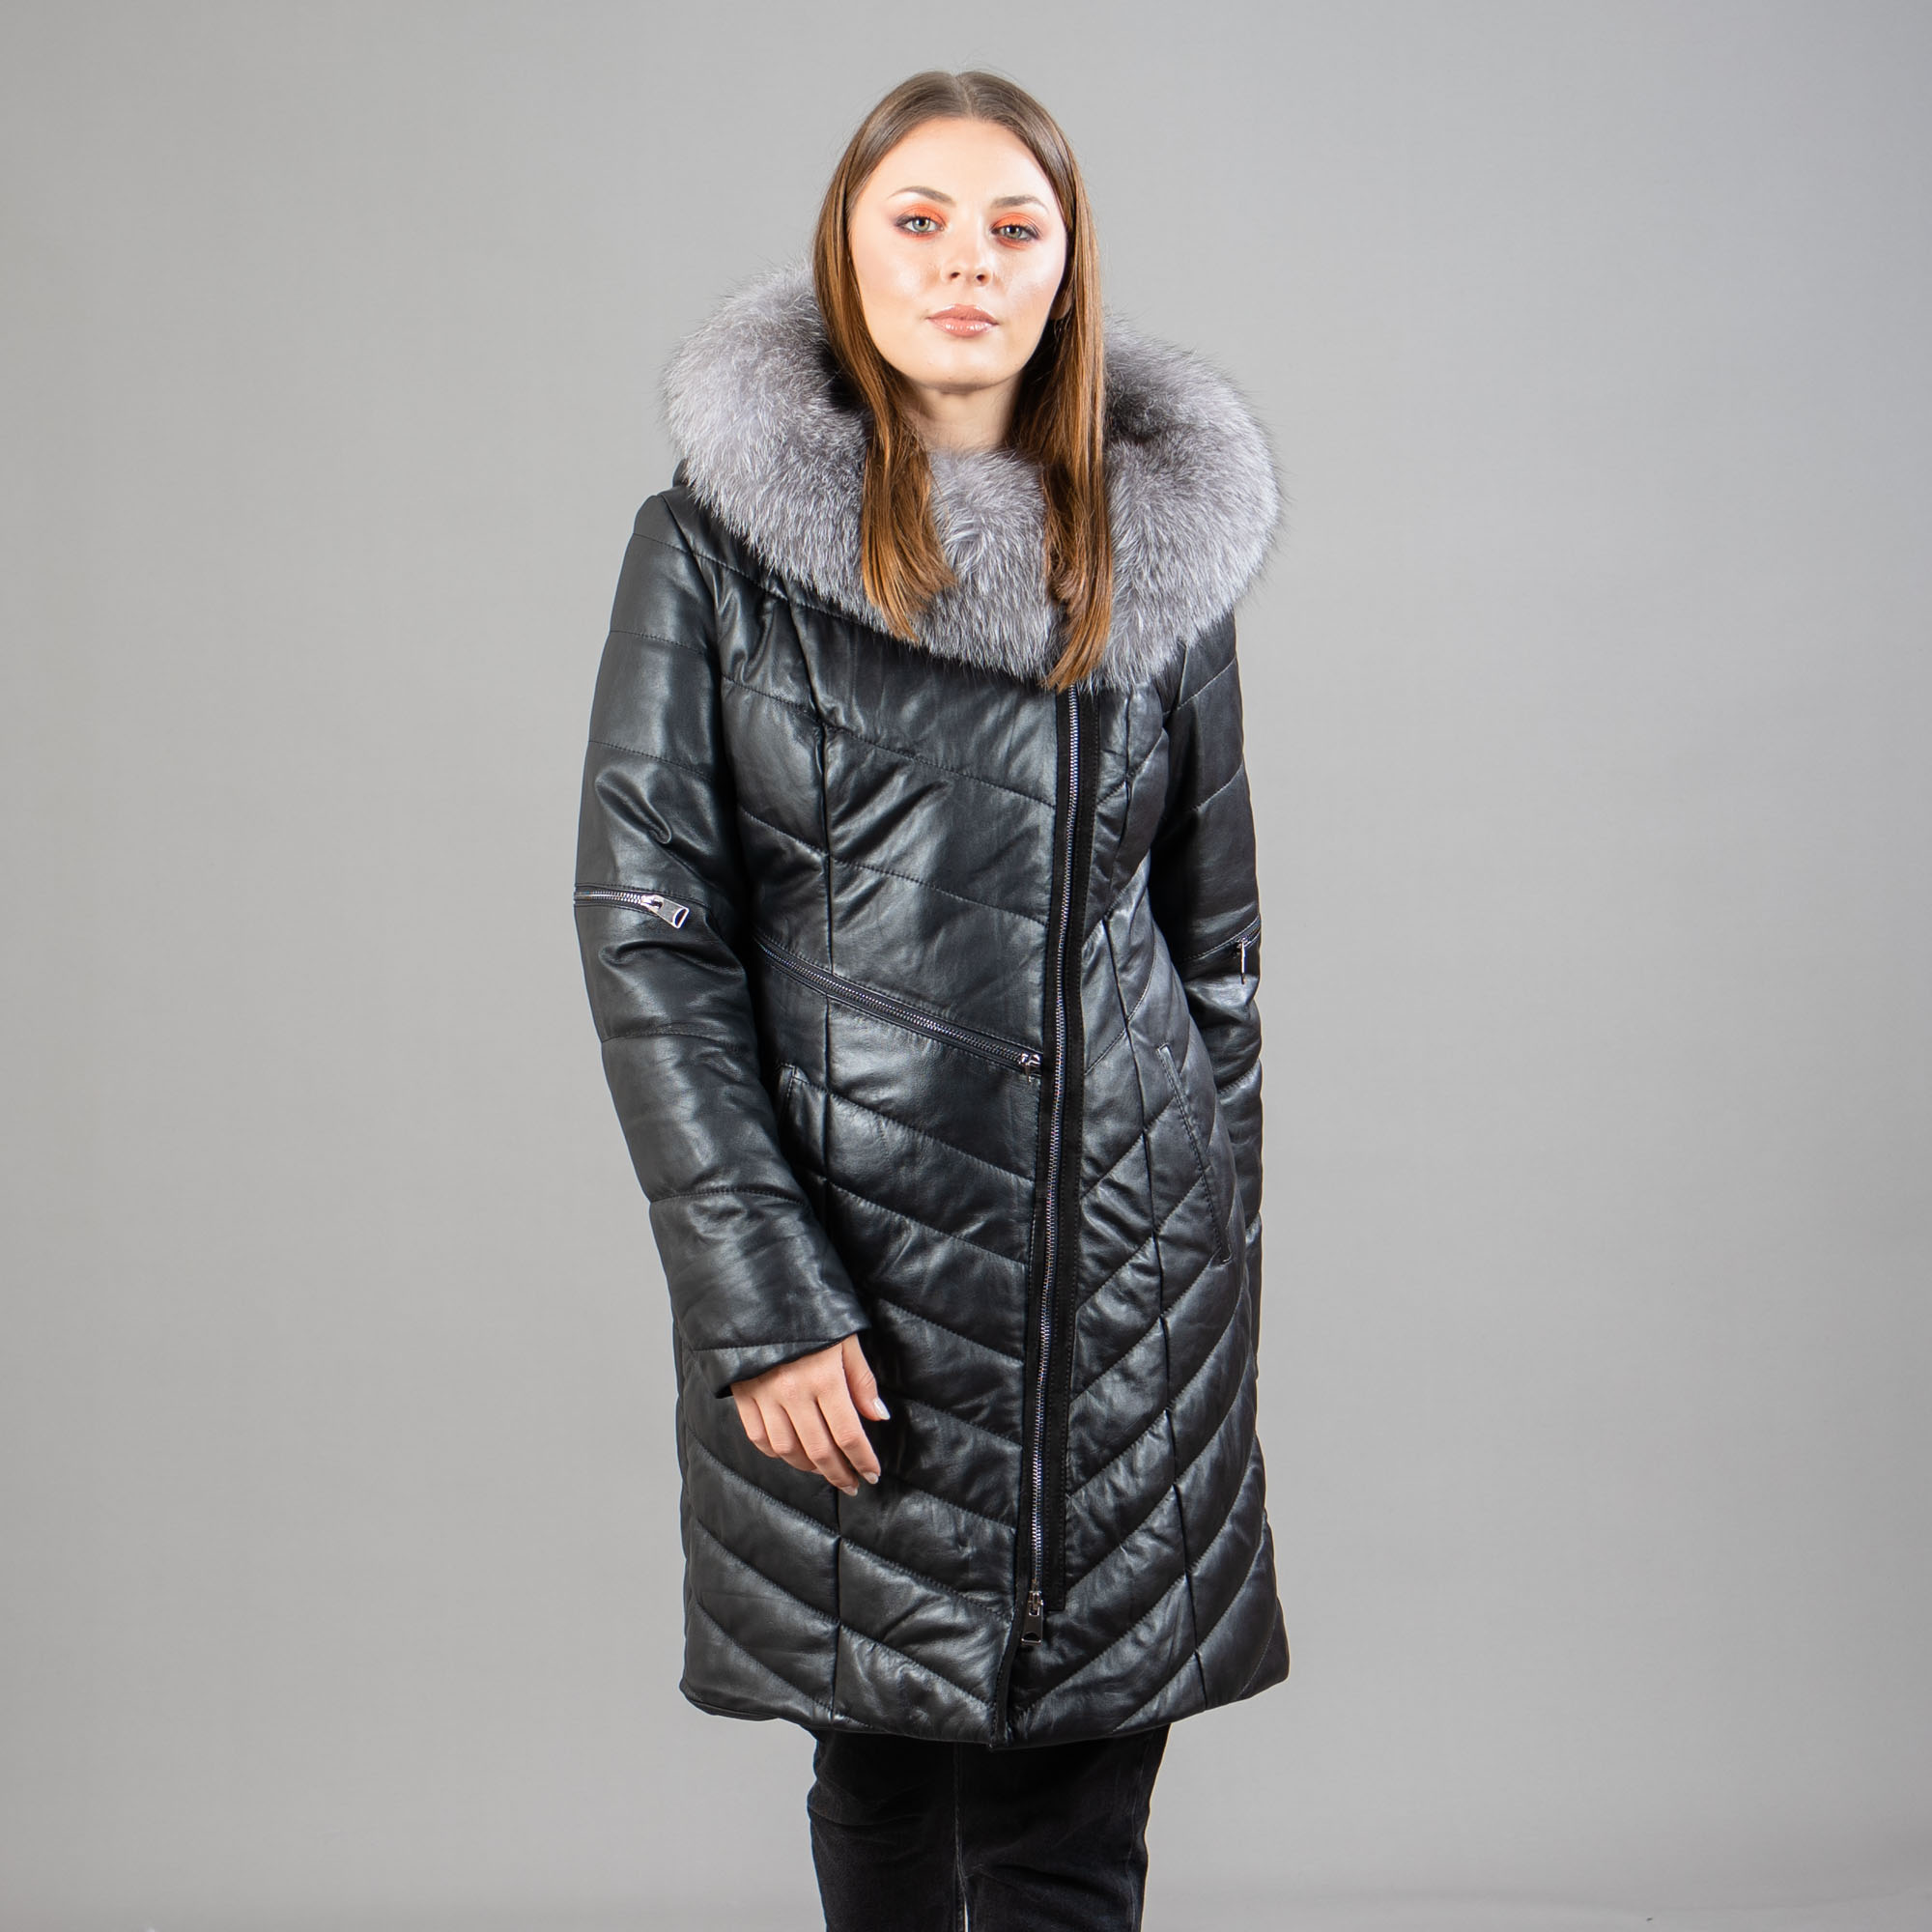 μαύρο δερμάτινο παλτό με γούνα αλεπούς στην κουκούλα